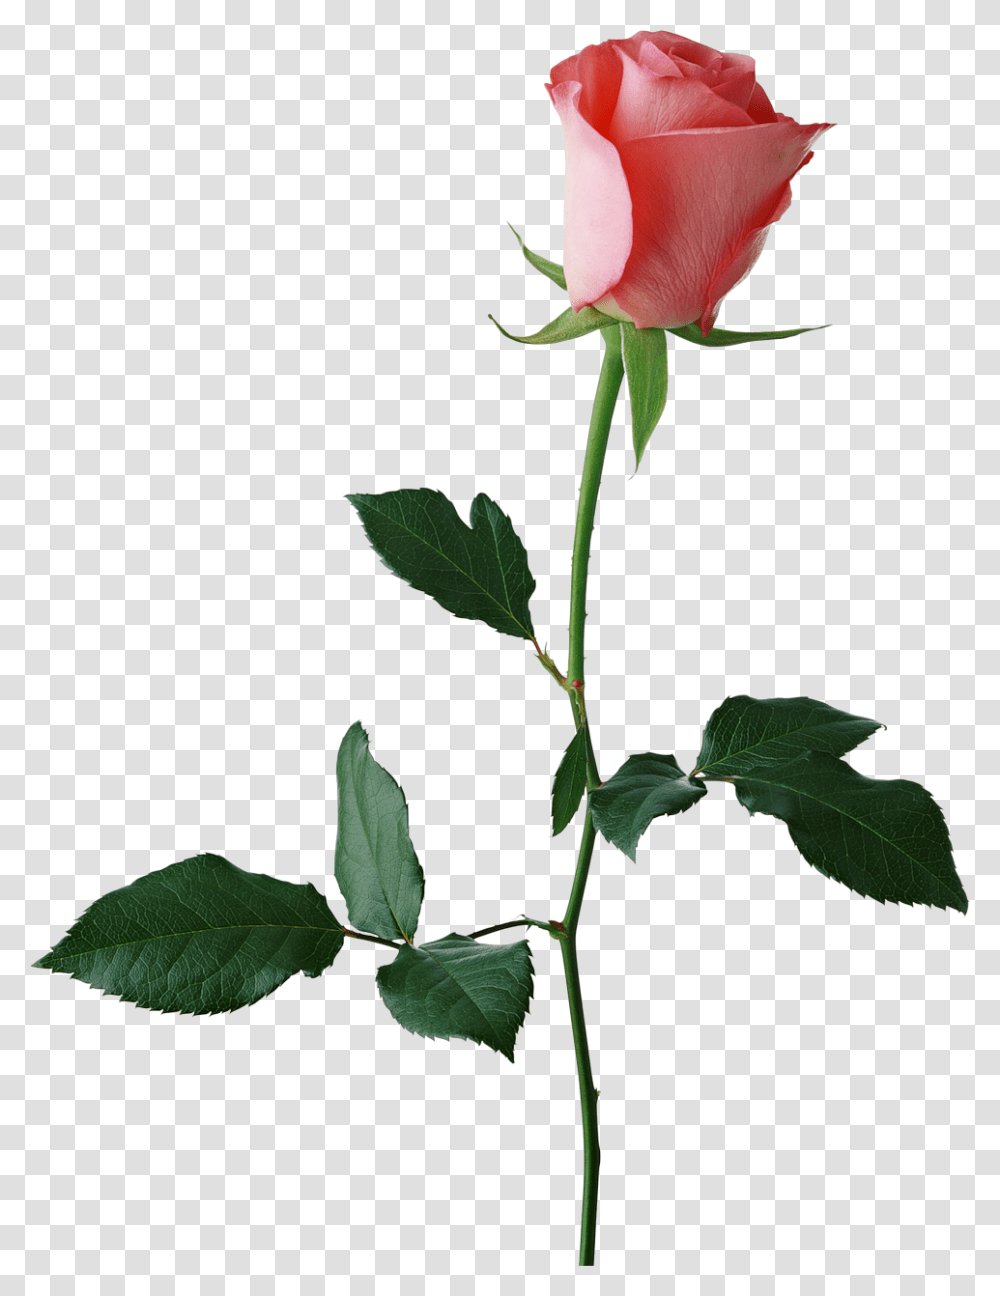 Rose Stem Large Rose Bud Clipart Red Rose Background, Flower, Plant, Blossom, Leaf Transparent Png